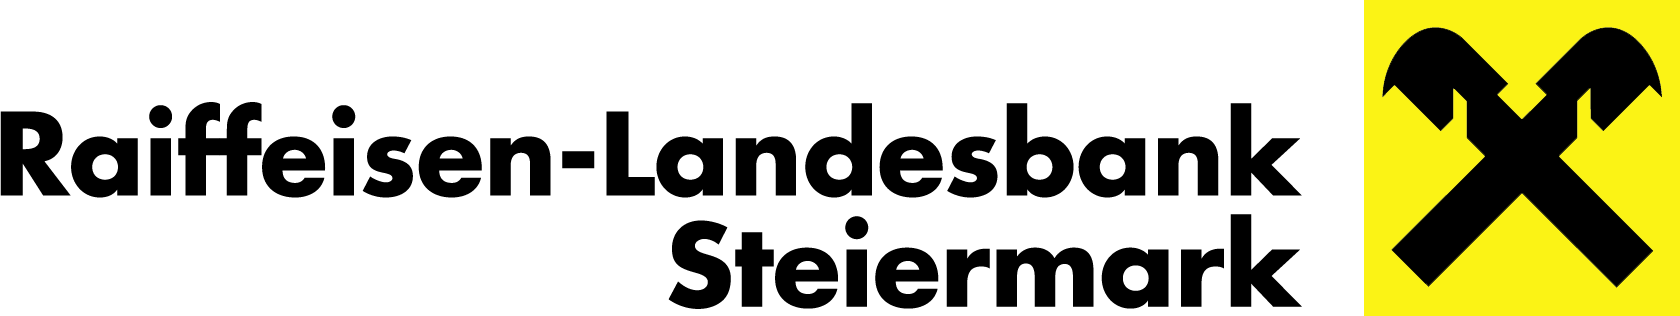 raiffeisen-landesbank-steiermark-logo